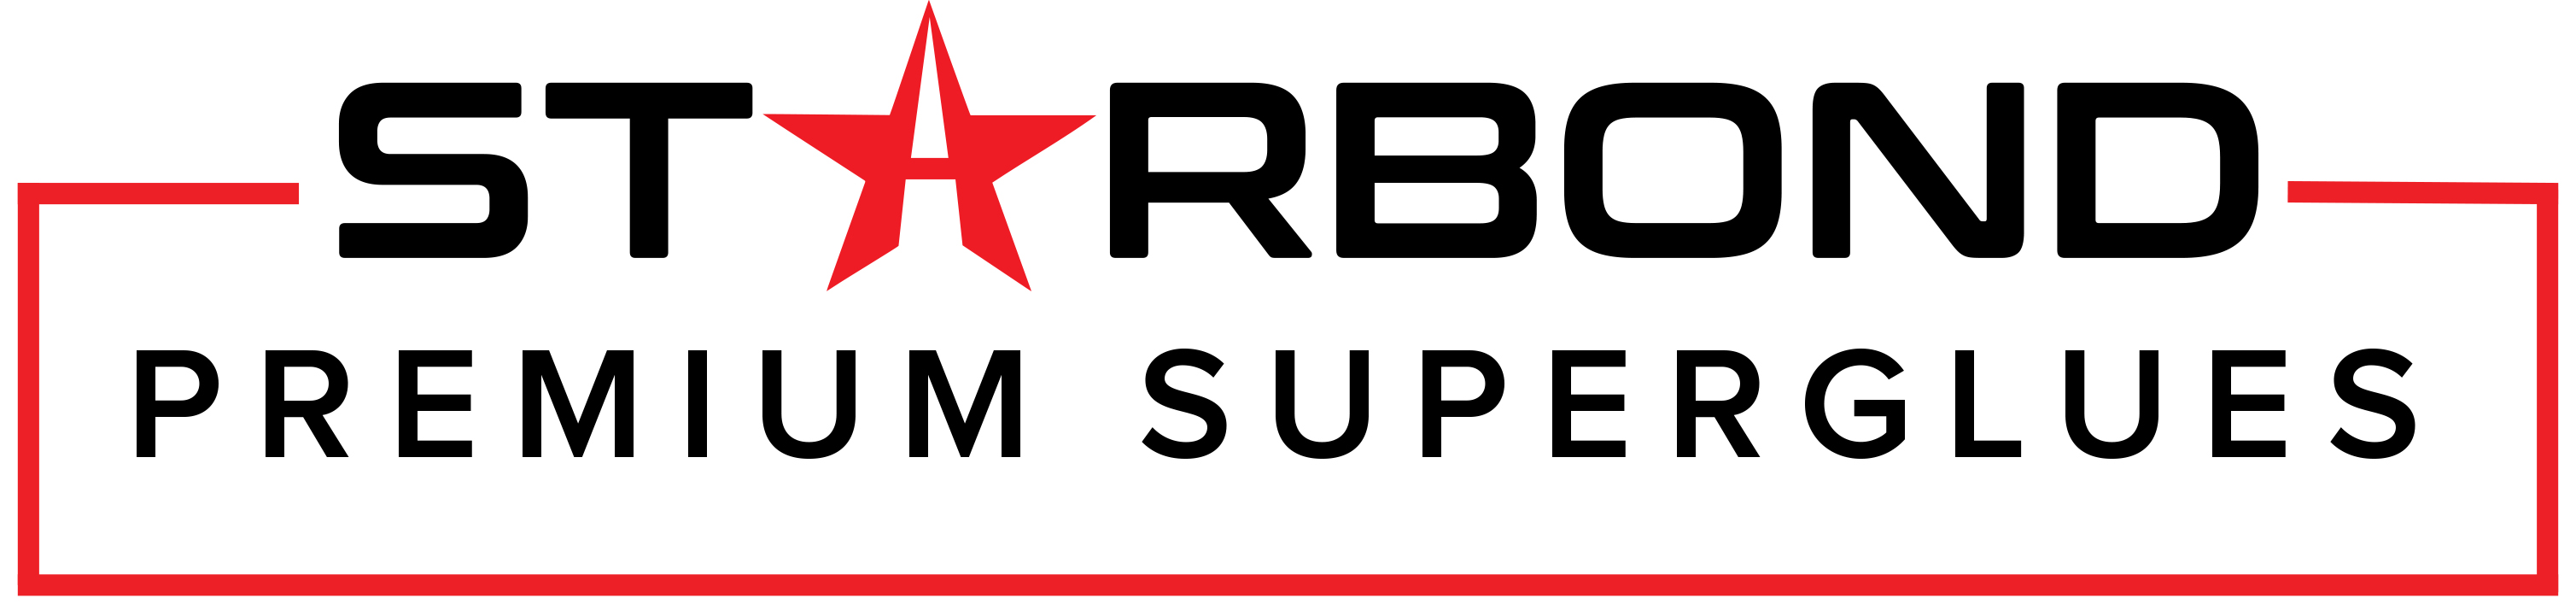 Starbond Premium Super Glues Logo